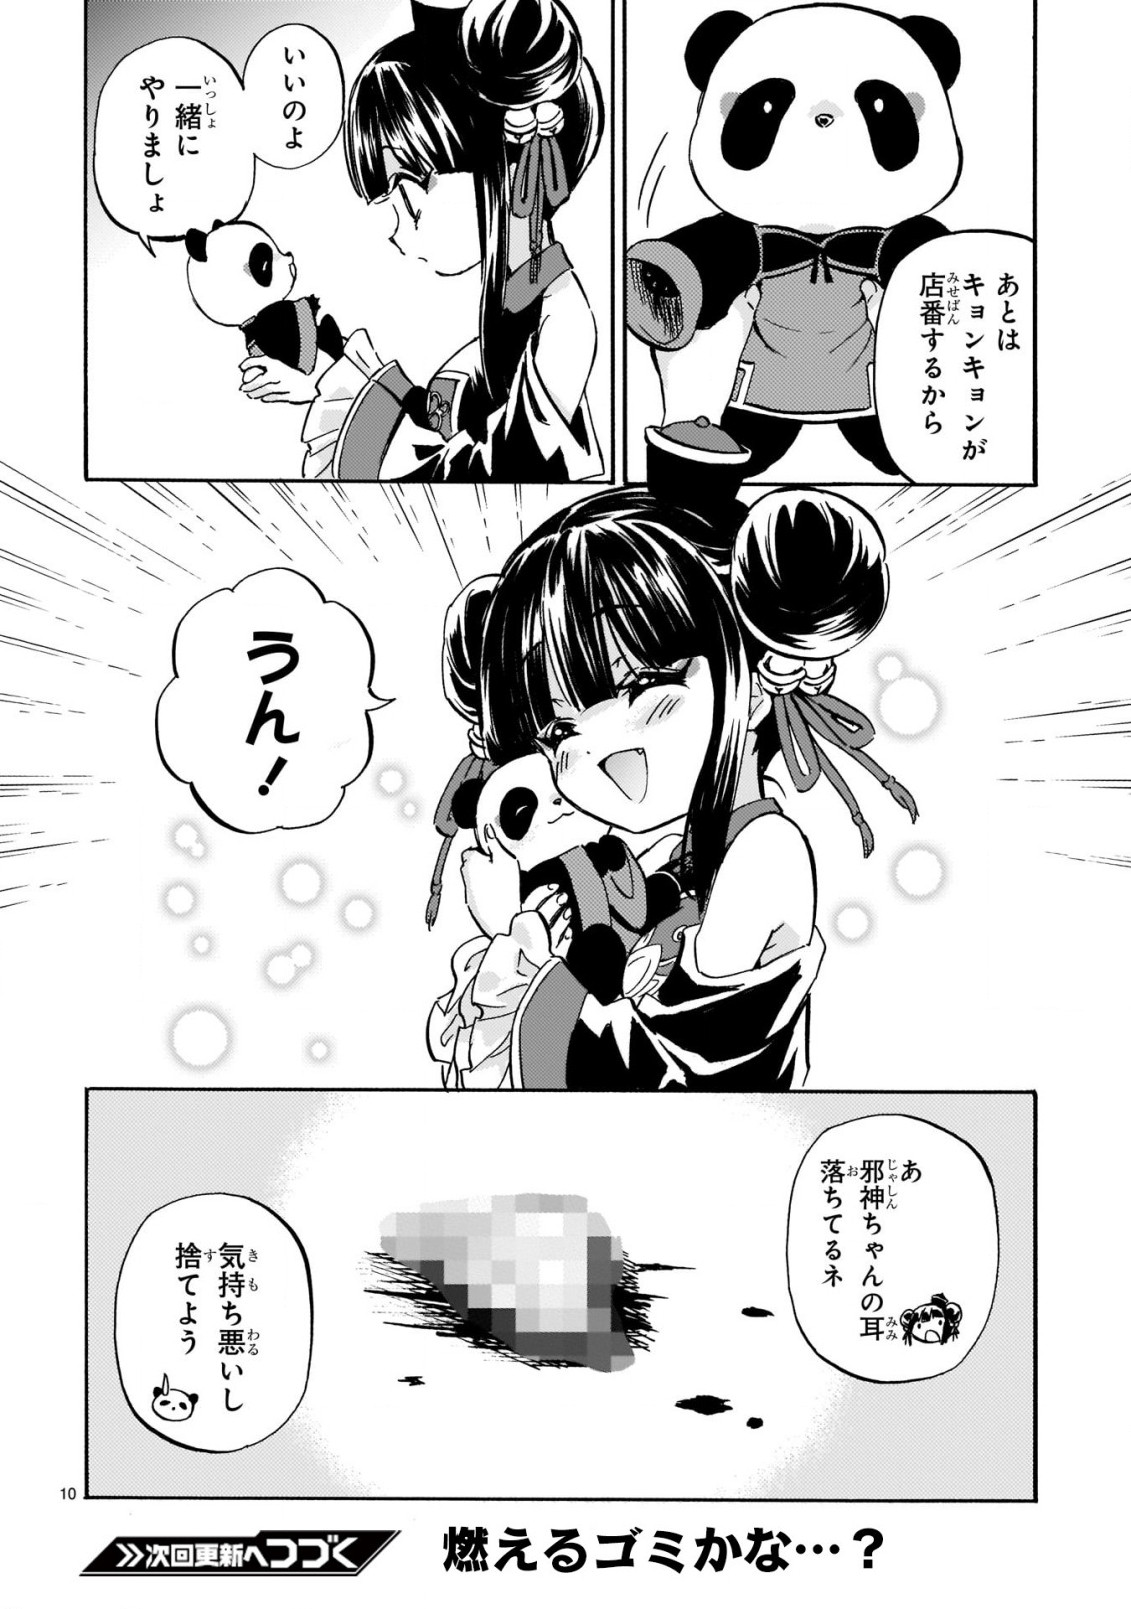 Jashin-chan Dropkick - Chapter 217 - Page 10